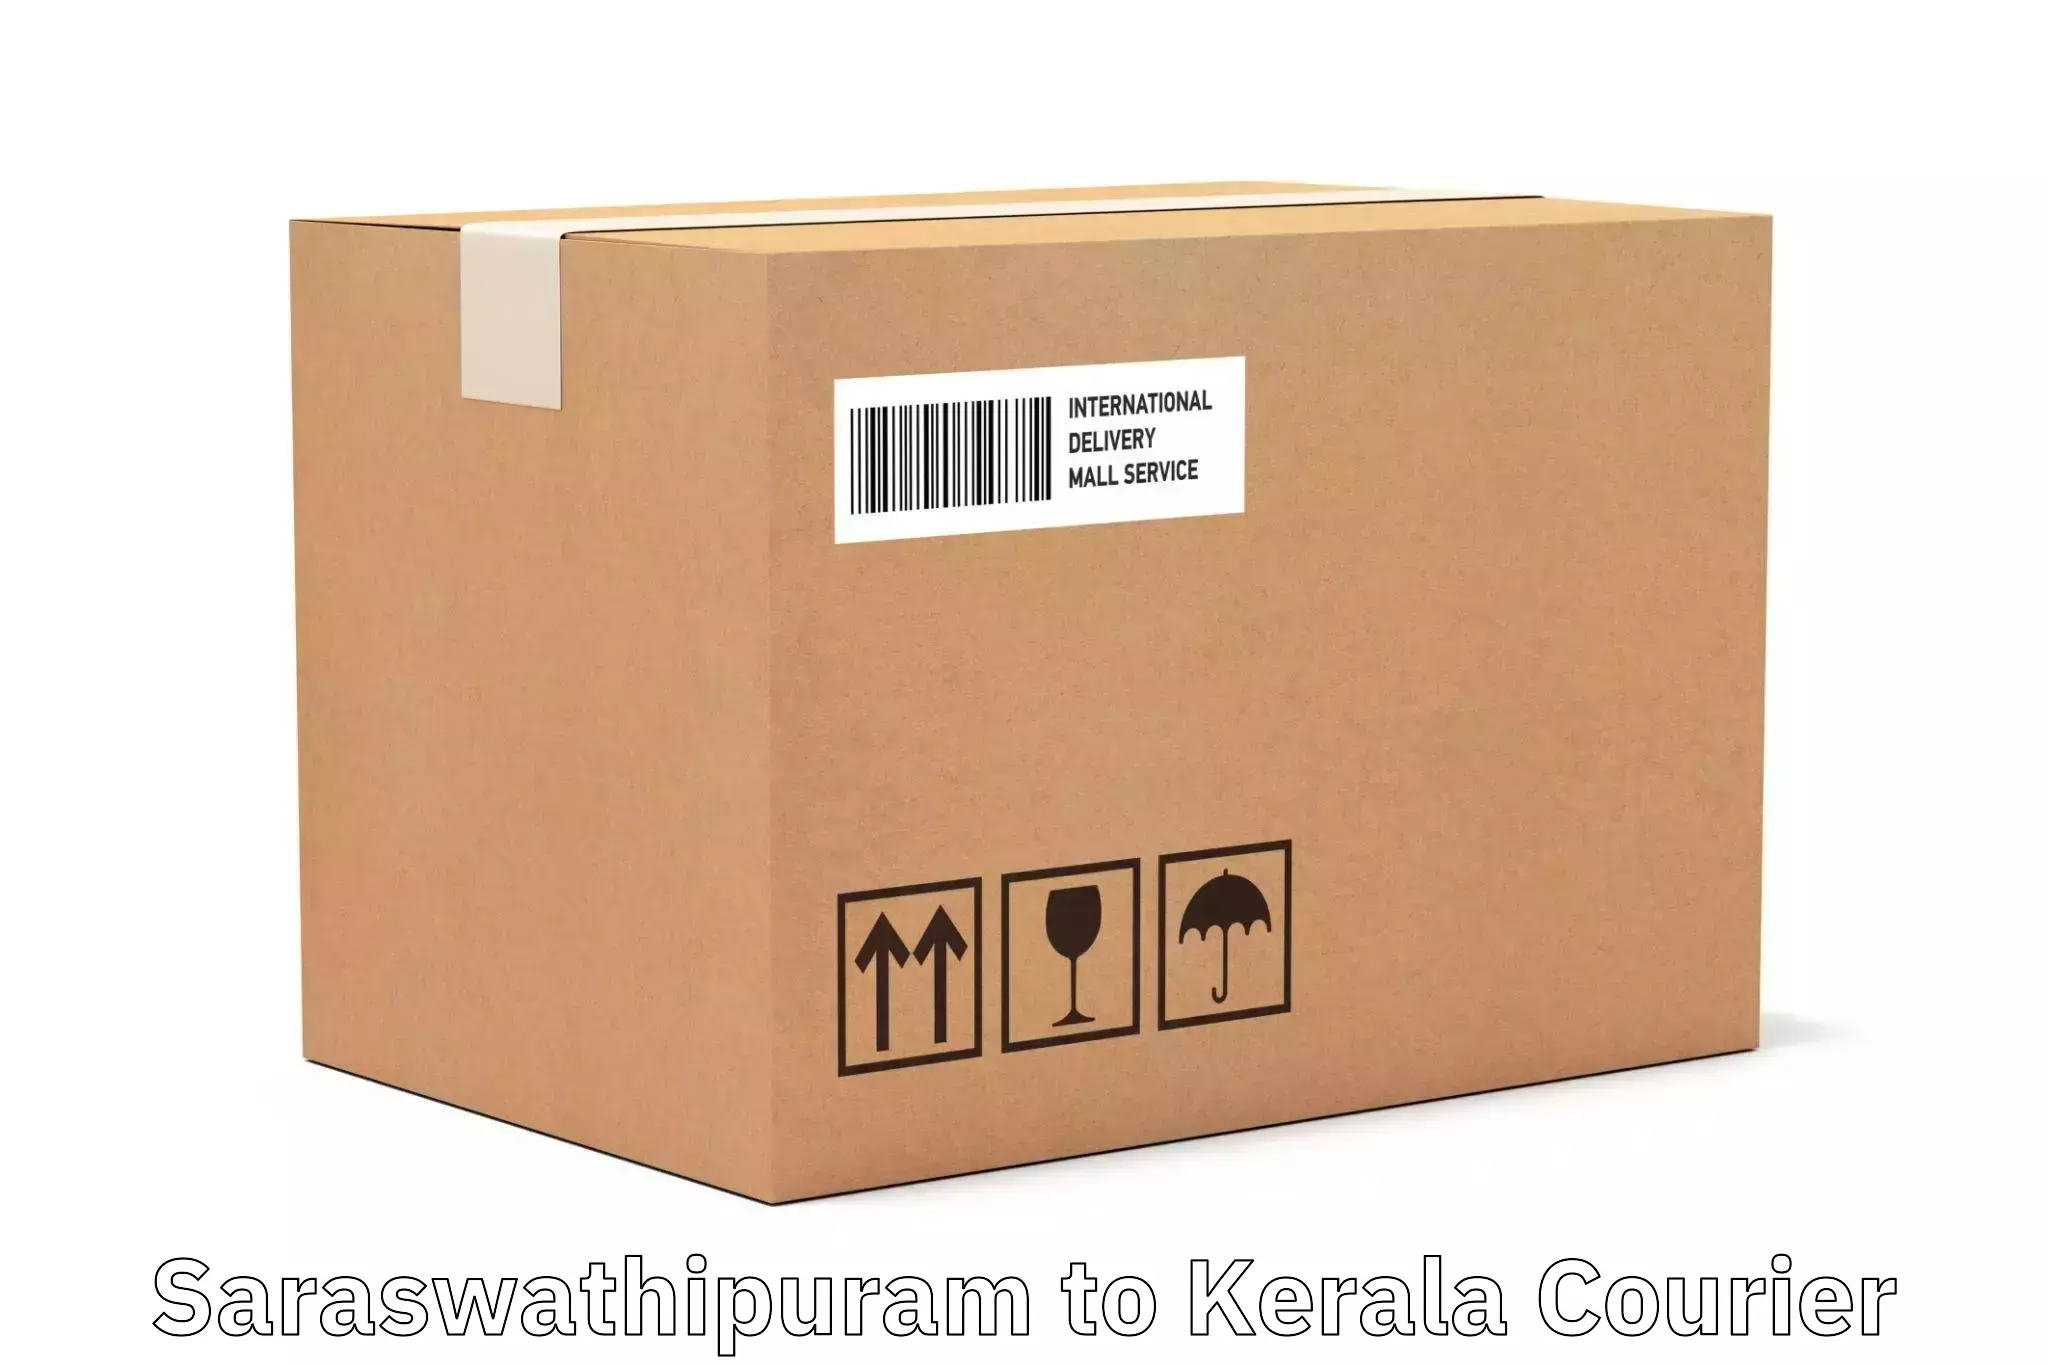 Nationwide shipping capabilities Saraswathipuram to Kochi